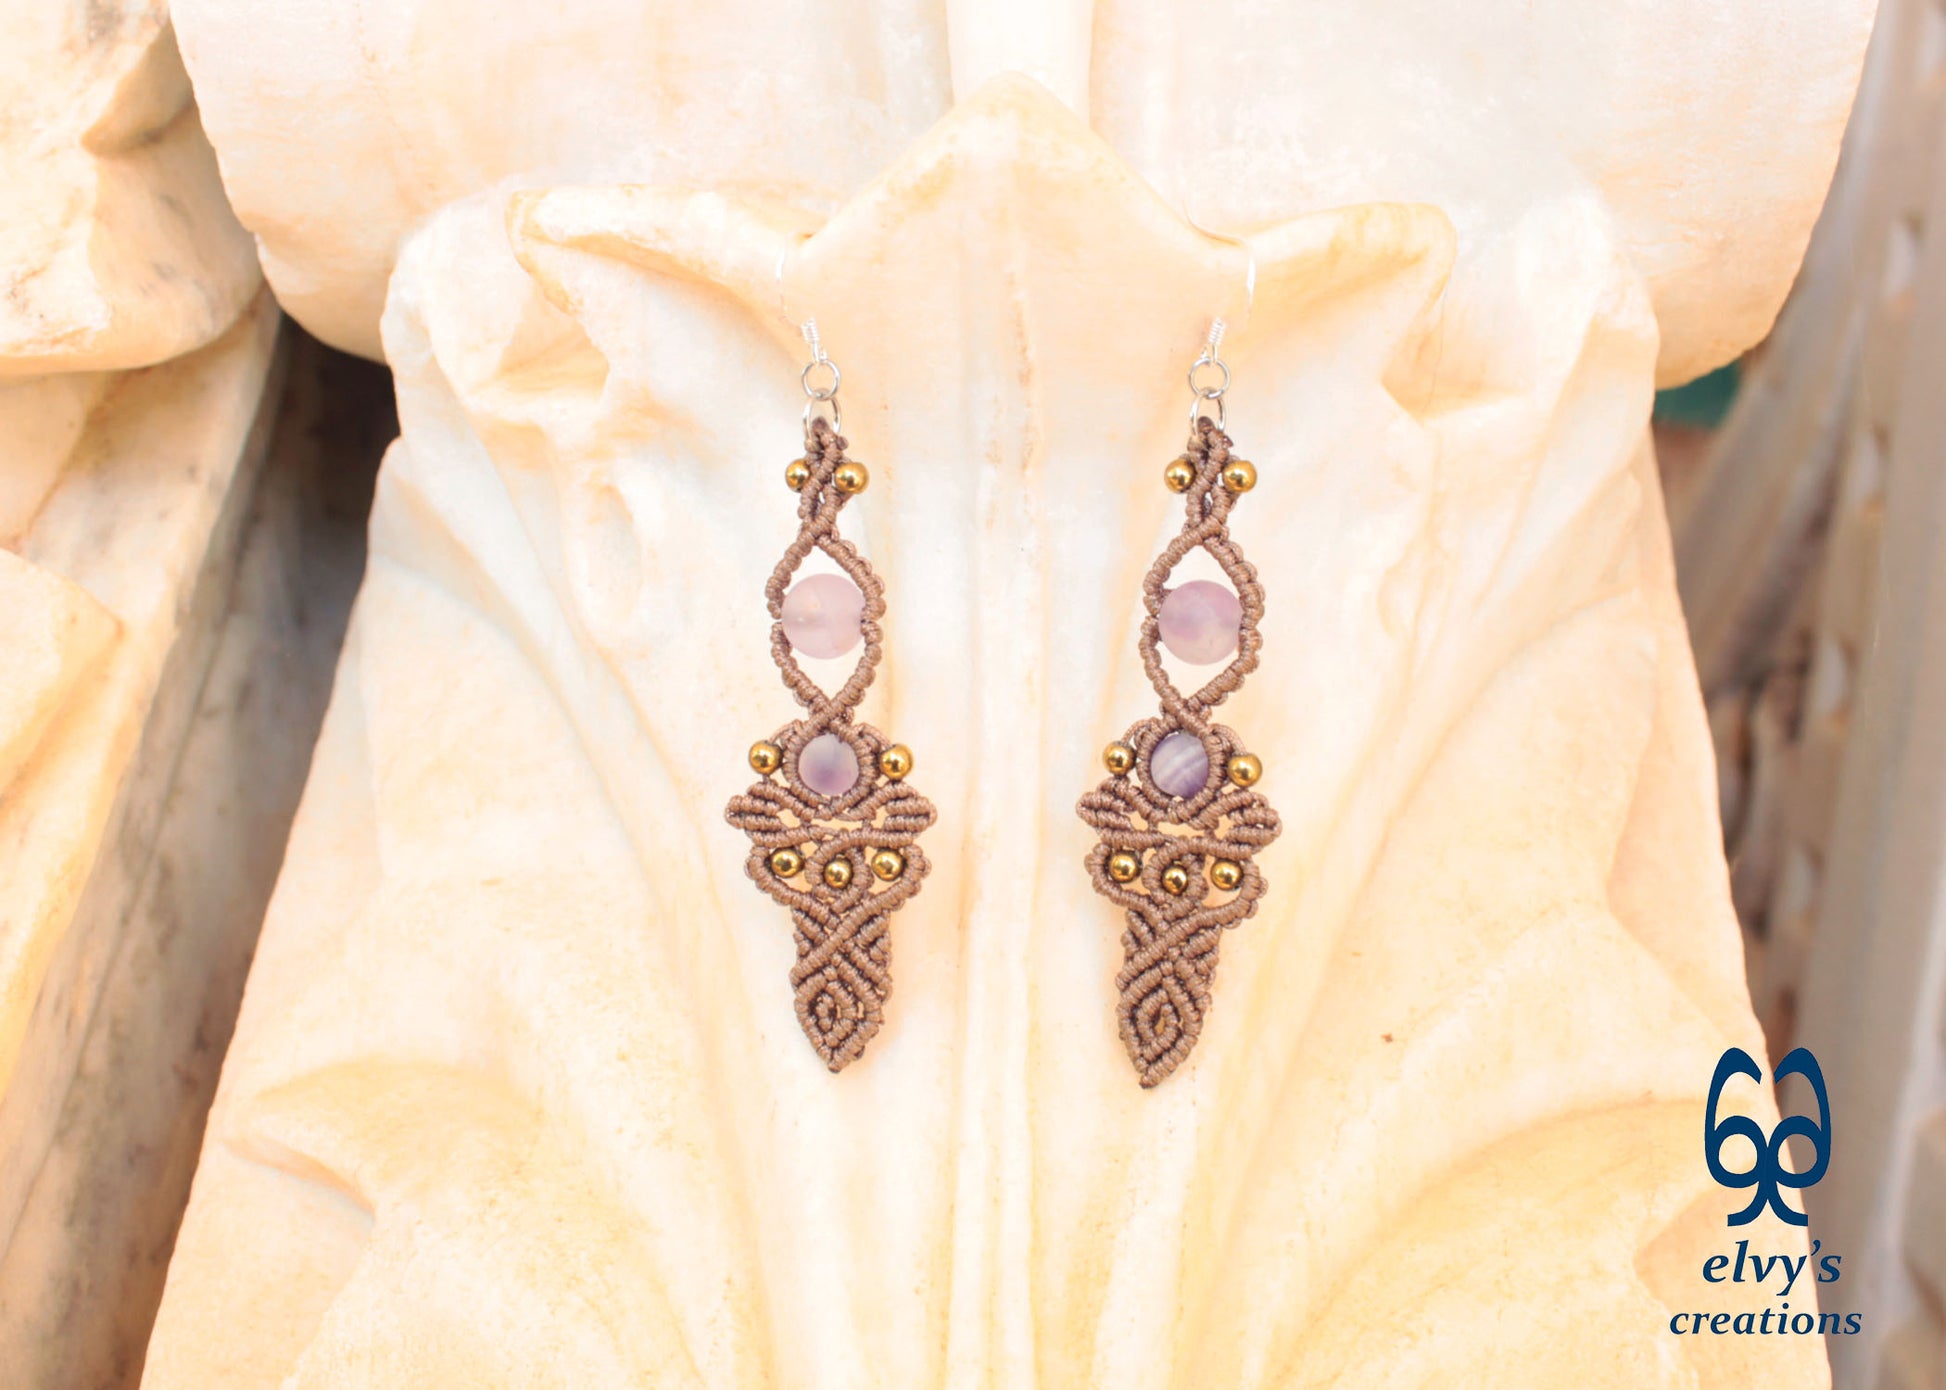 Brown Macrame Earrings with Beryl Gemstones Handmade Silver Earrings